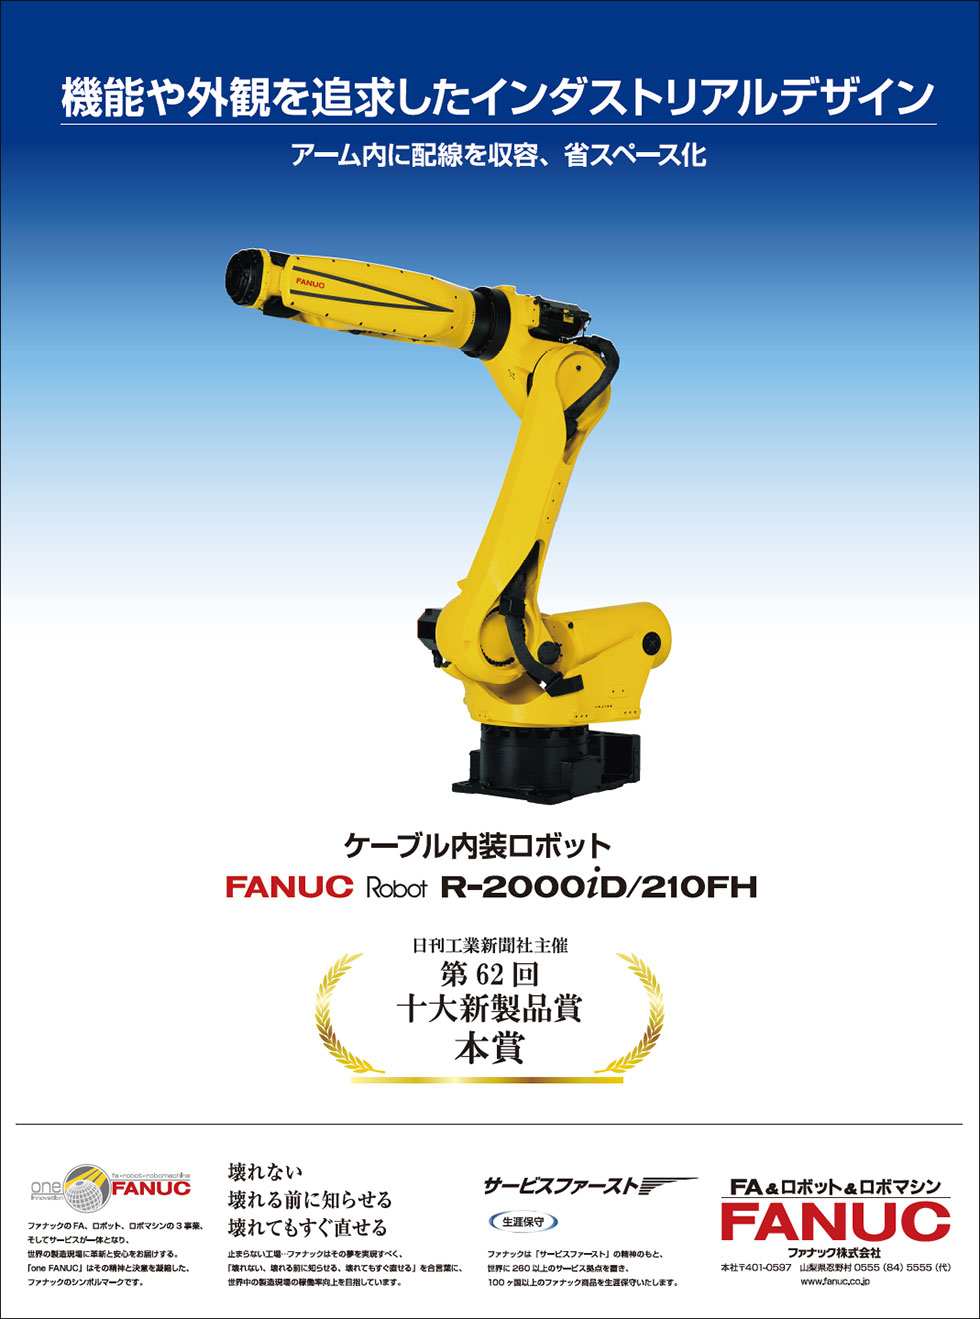 機能や外観を追及したインダストリアルデザイン FANUC Robot R-2000iD/210FH （第62回十大新製品賞本賞受賞）